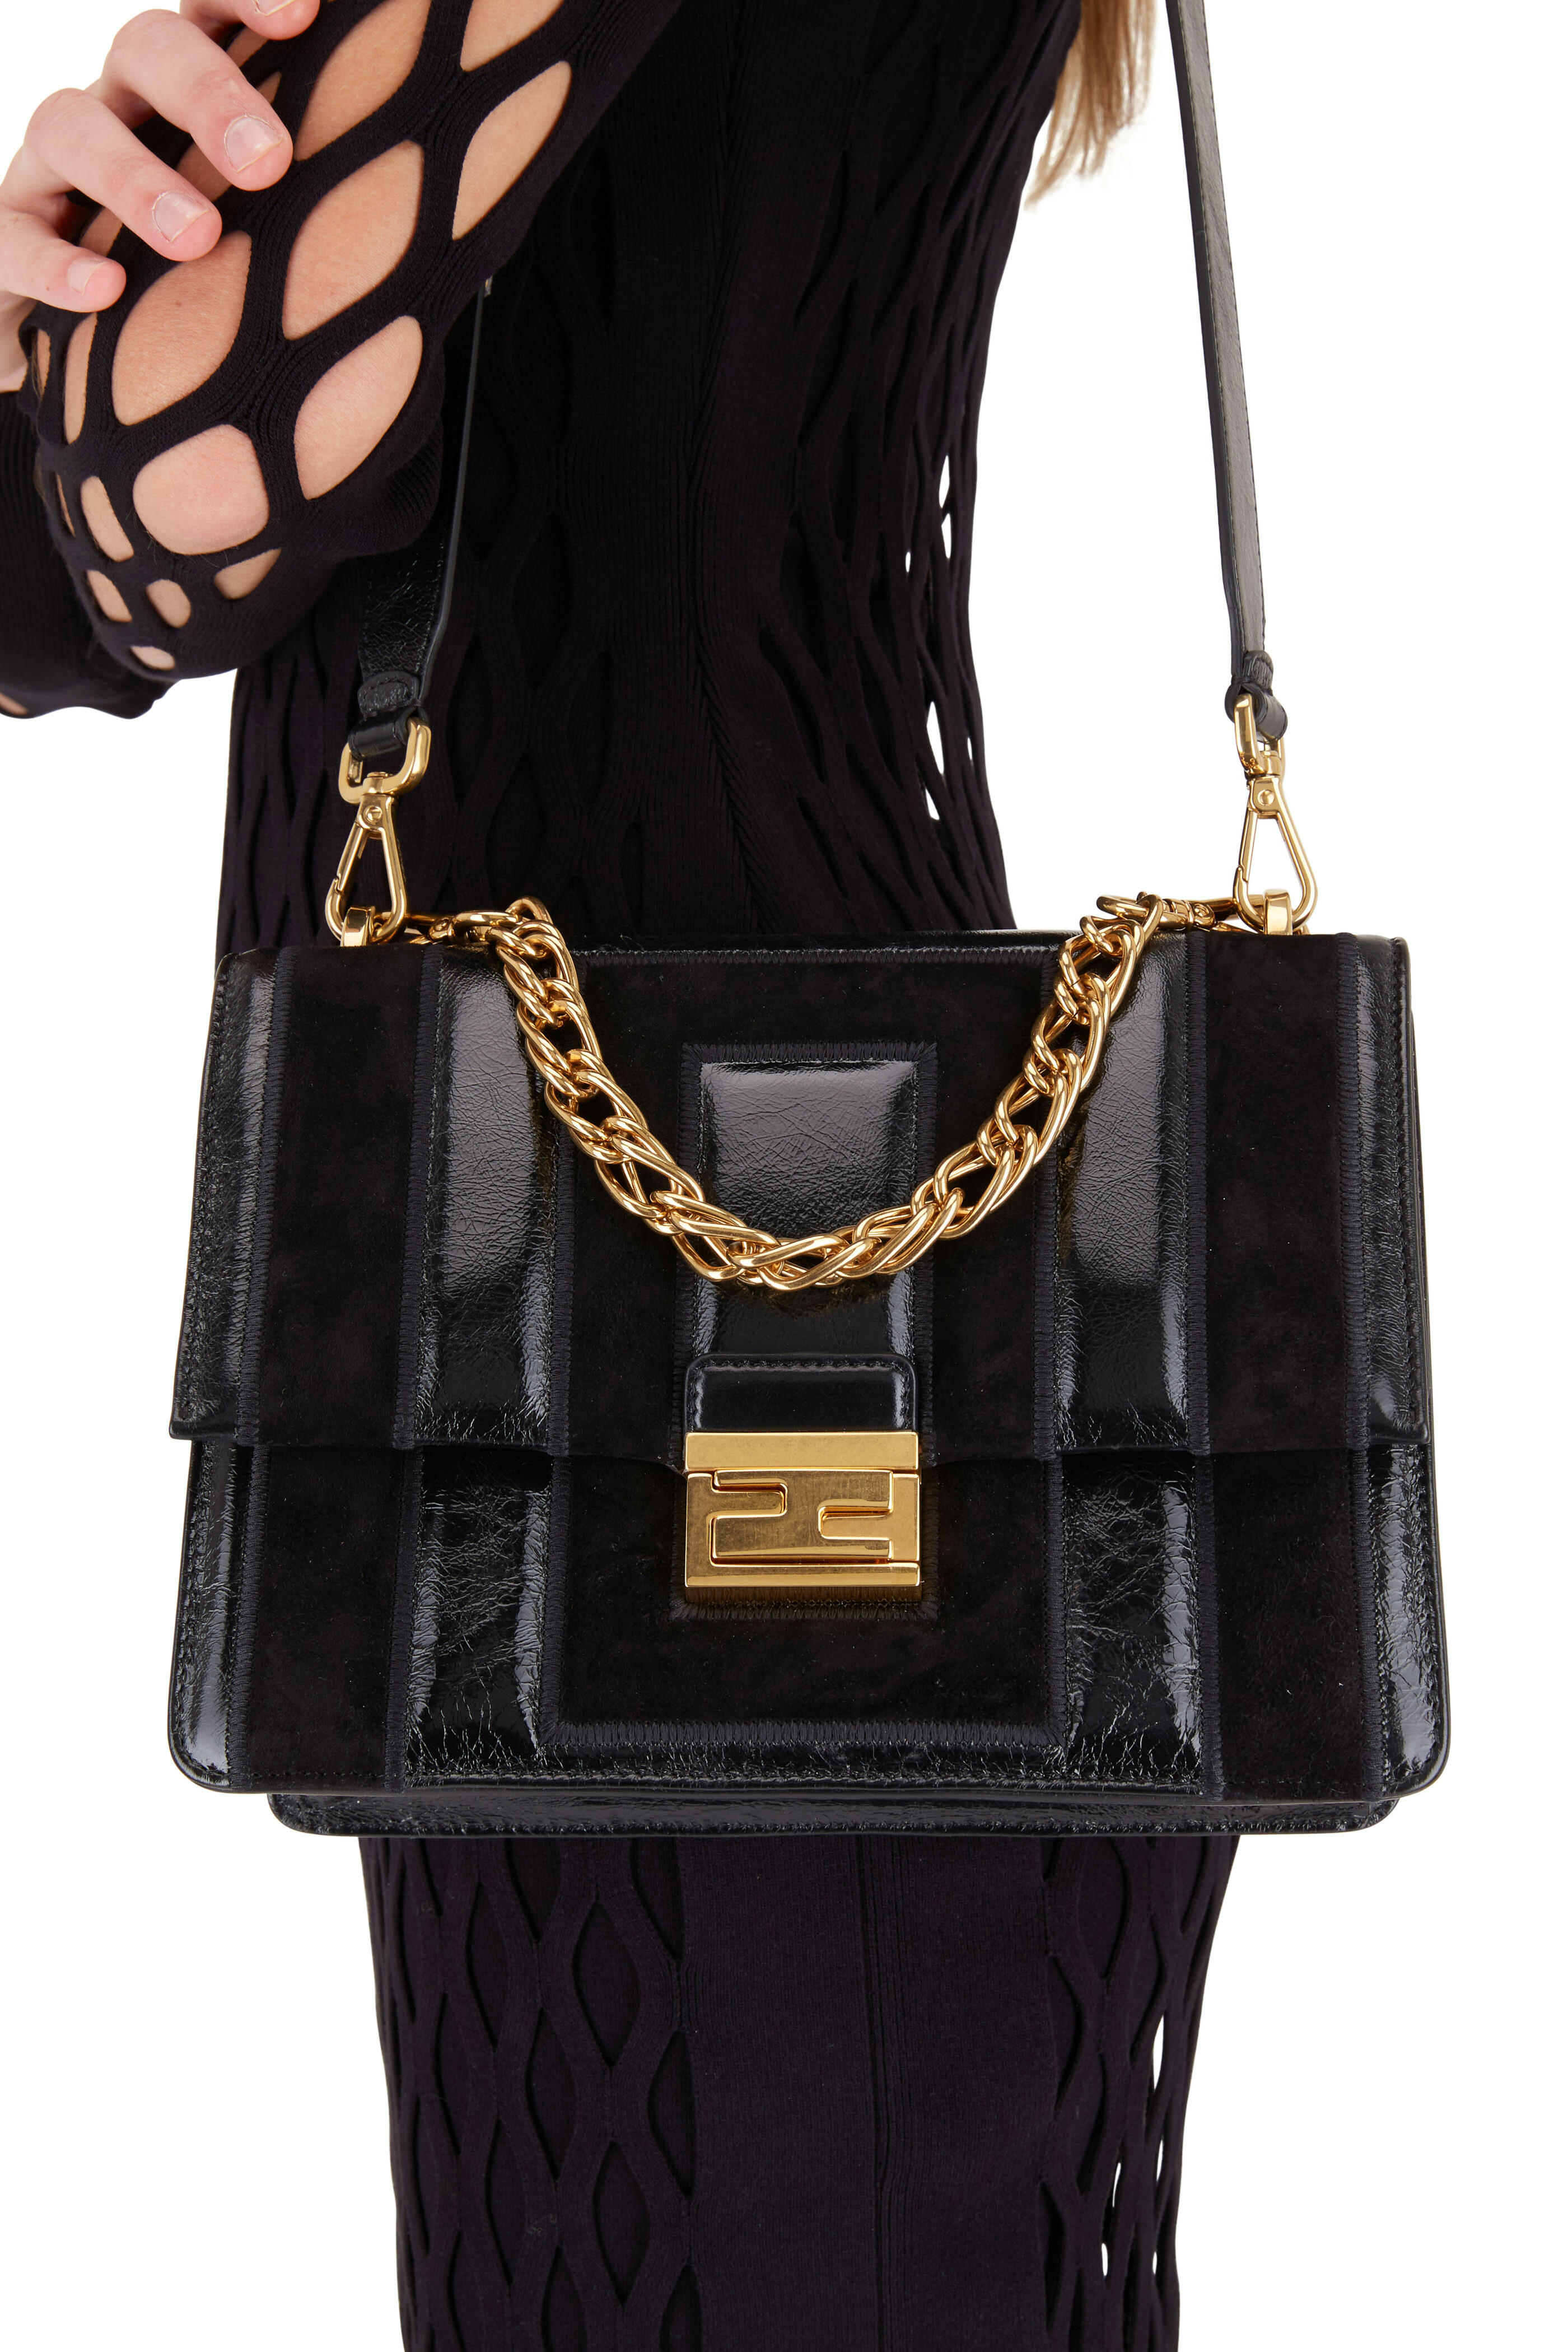 Fendi Black Kan I shoulder bag with Fendi Black Logo detail